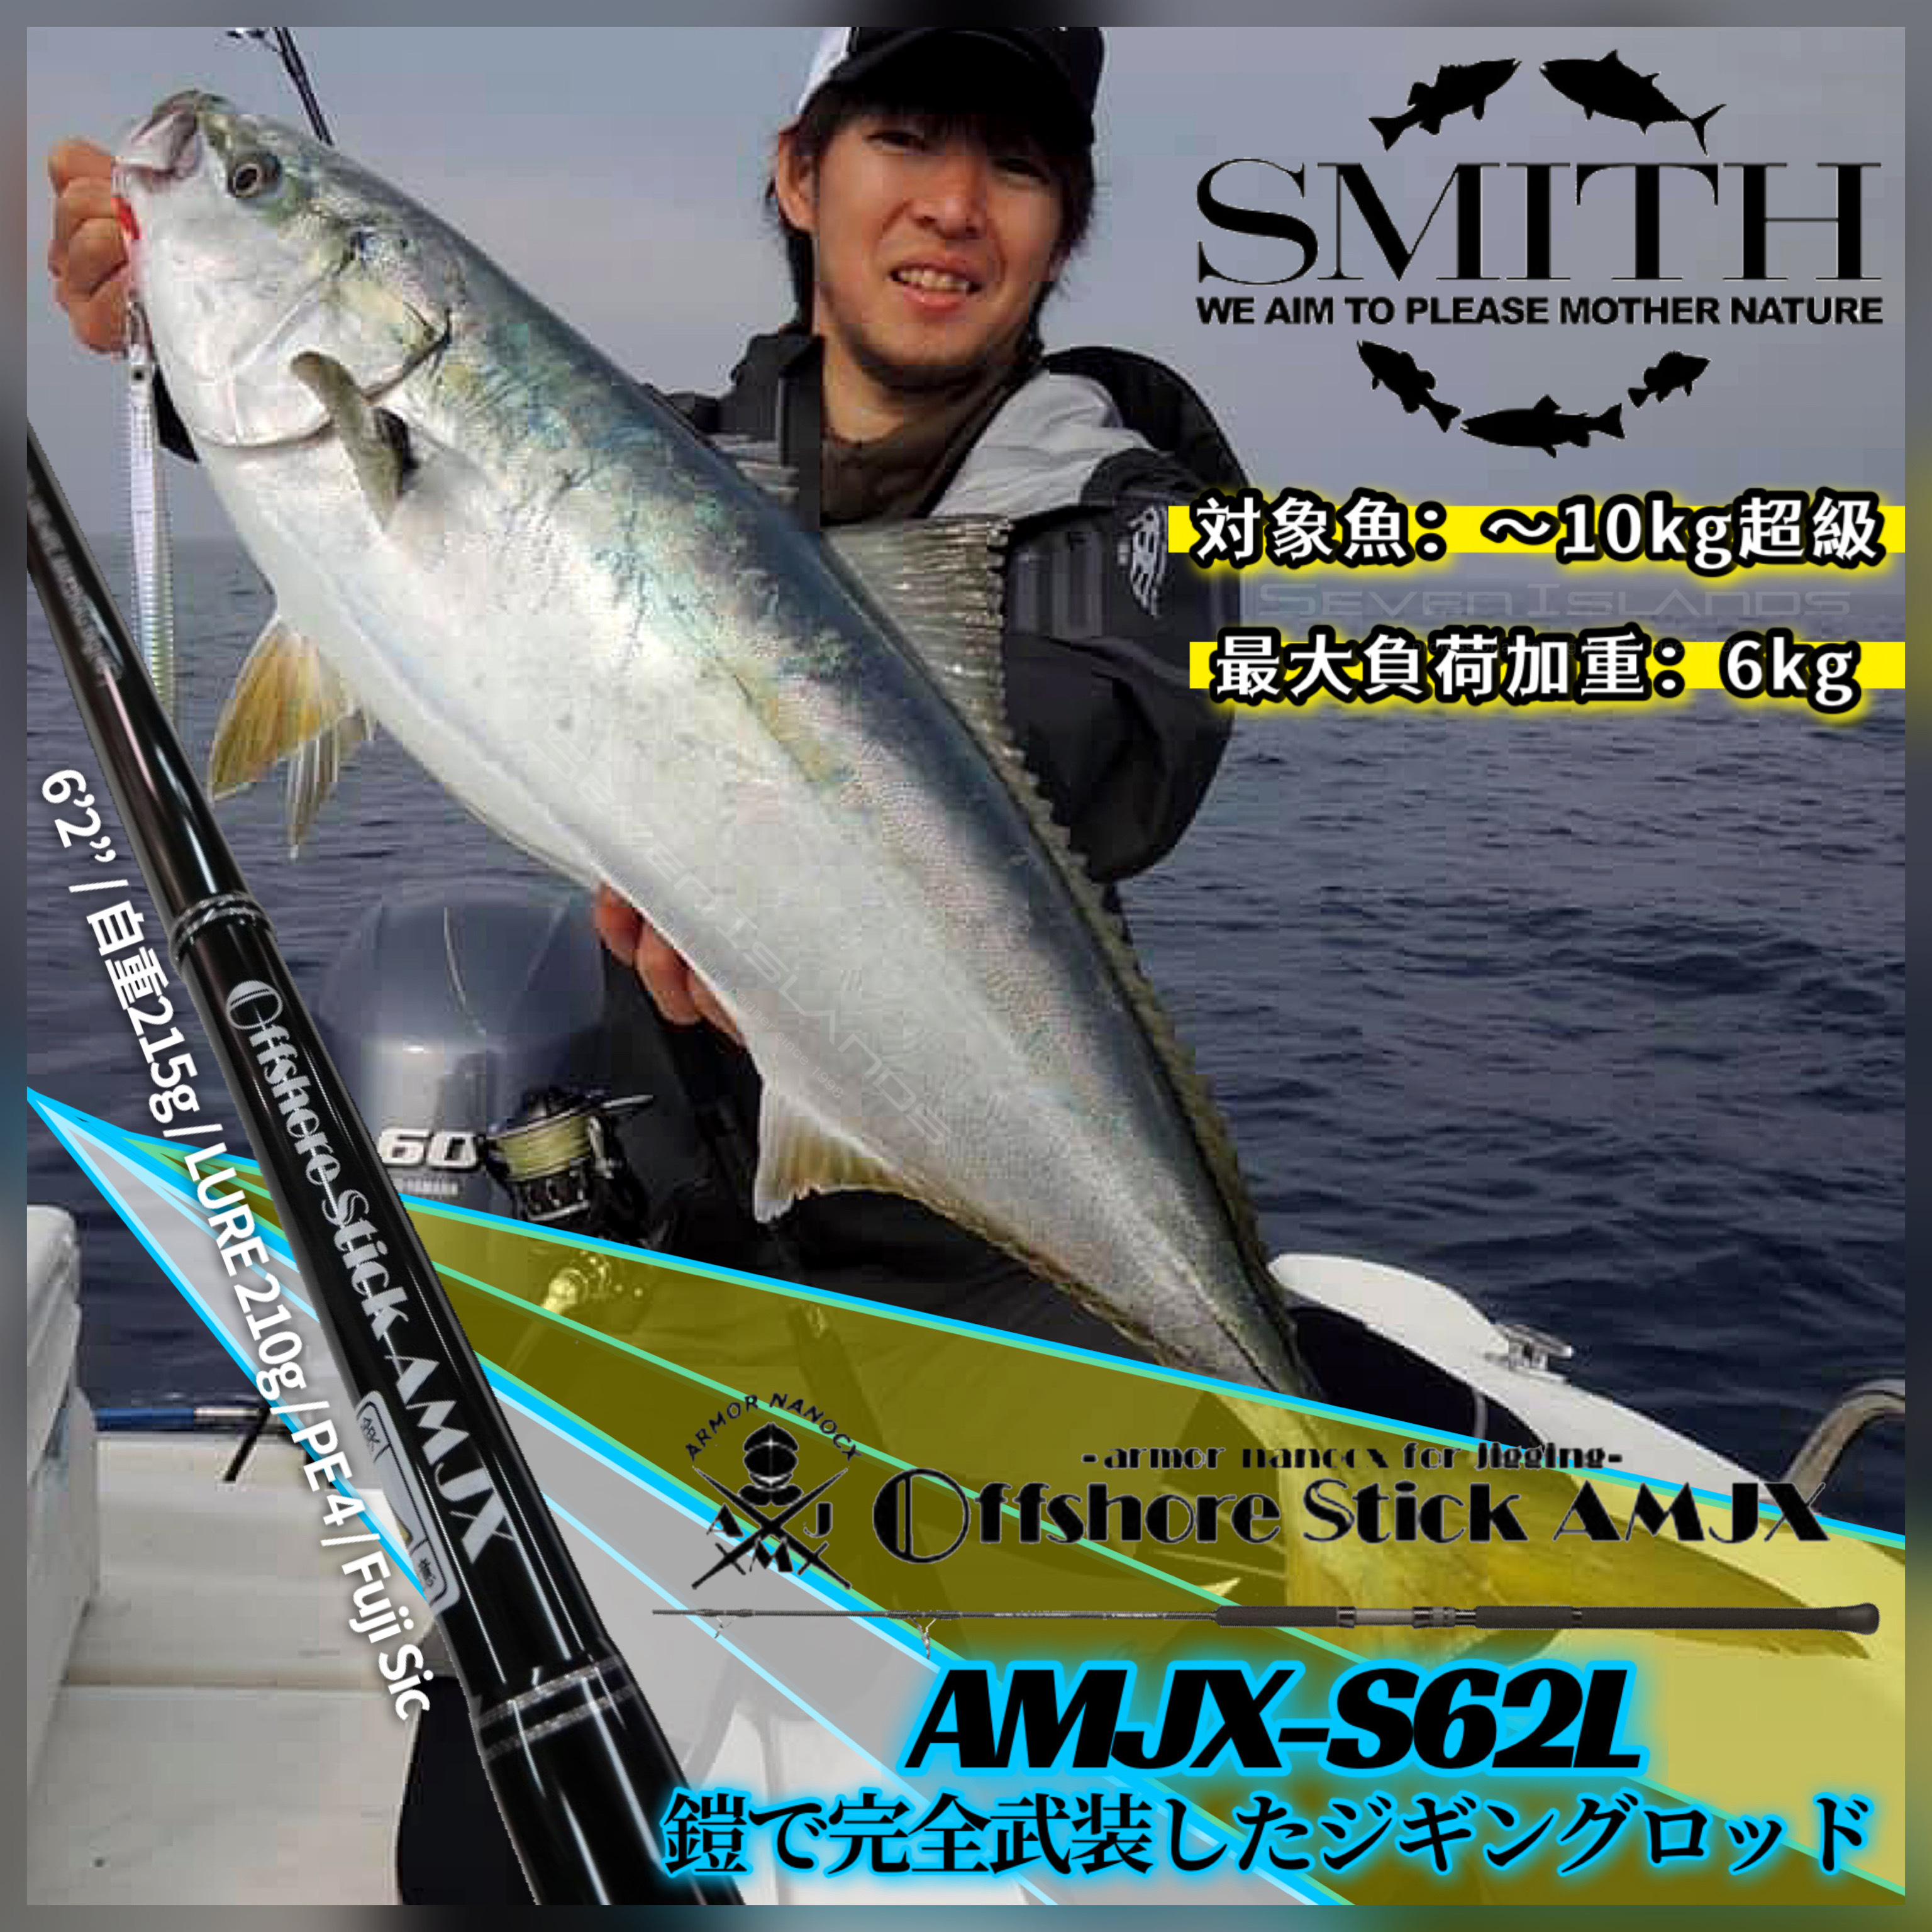 スミス(SMITH LTD) オフショアスティック AMJX-S62L-